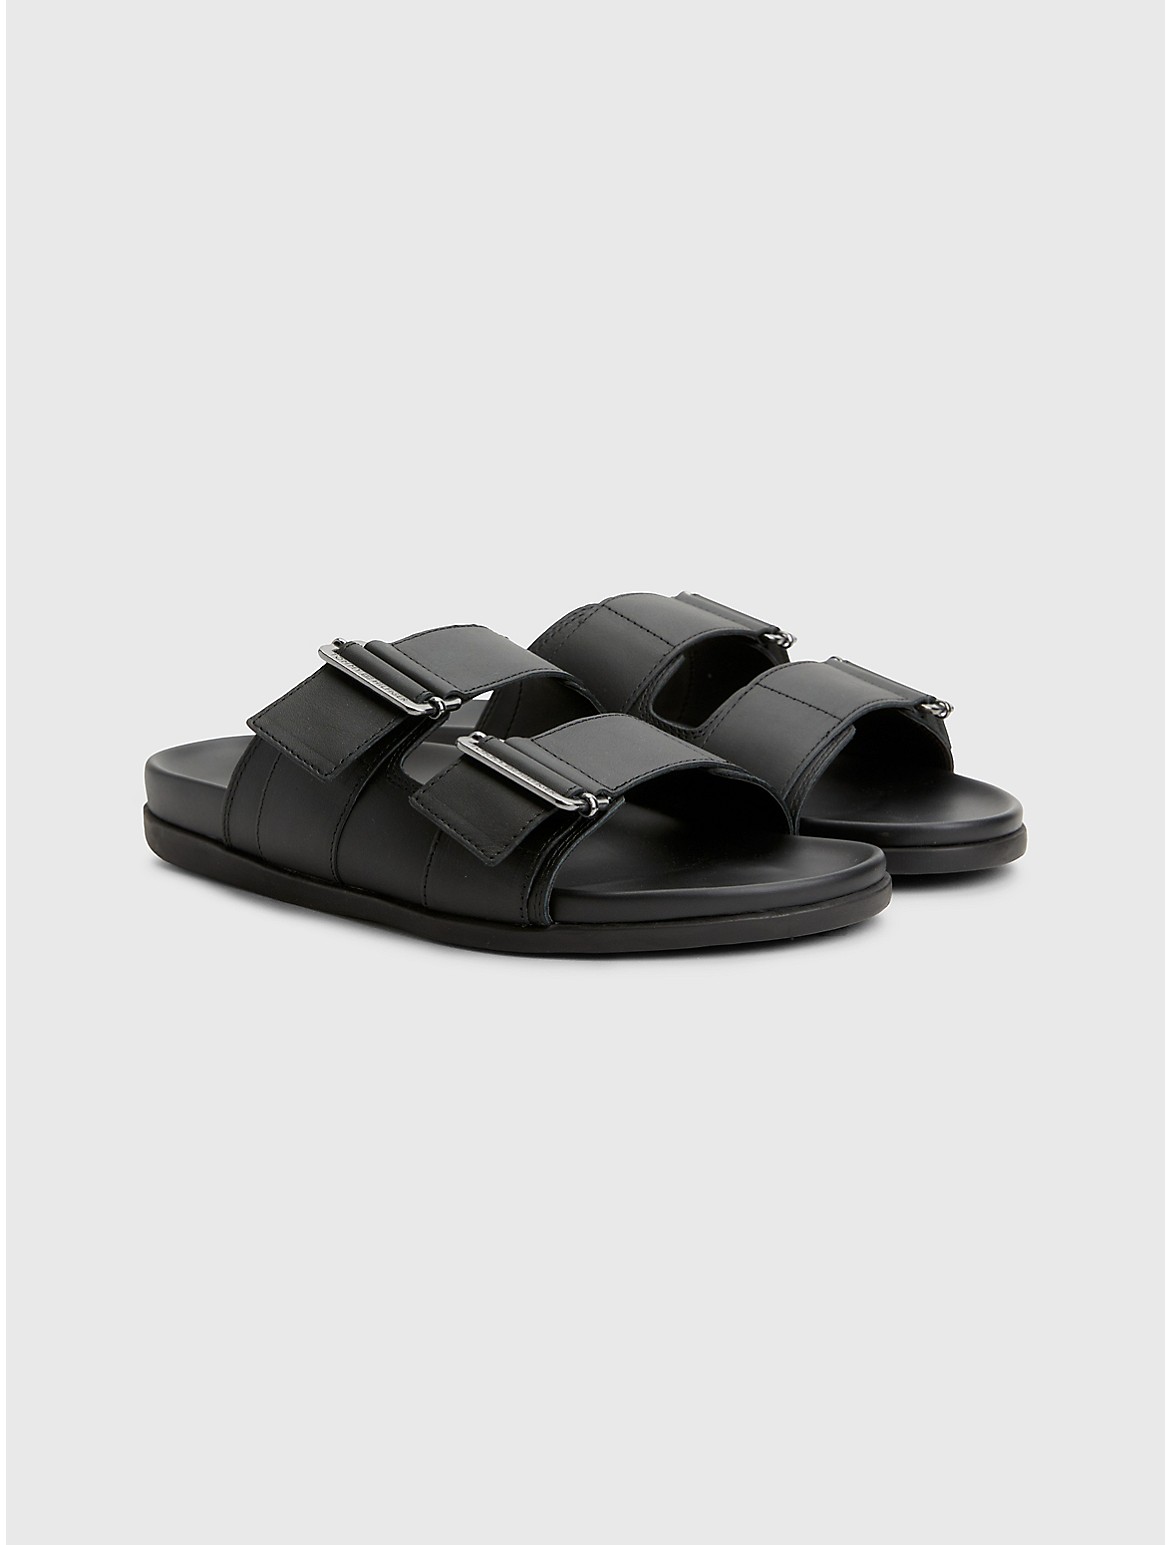 Tommy Hilfiger Men's Adjustable Leather Strap Sandal - Black - 10